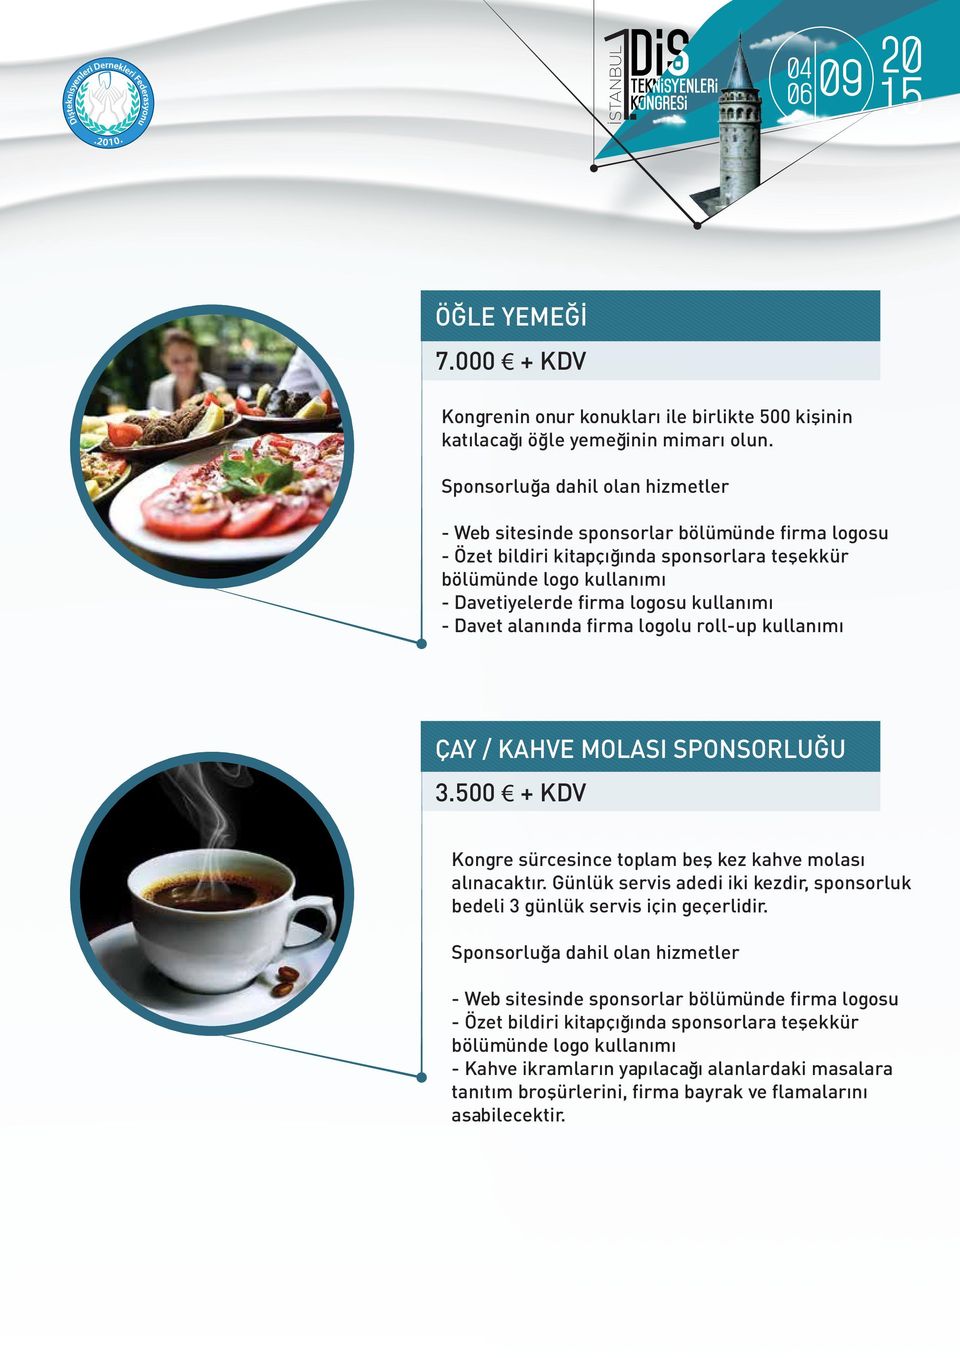 roll-up kullanımı ÇAY / KAHVE MOLASI SPONSORLUĞU 3.500 + KDV Kongre sürcesince toplam beş kez kahve molası alınacaktır.